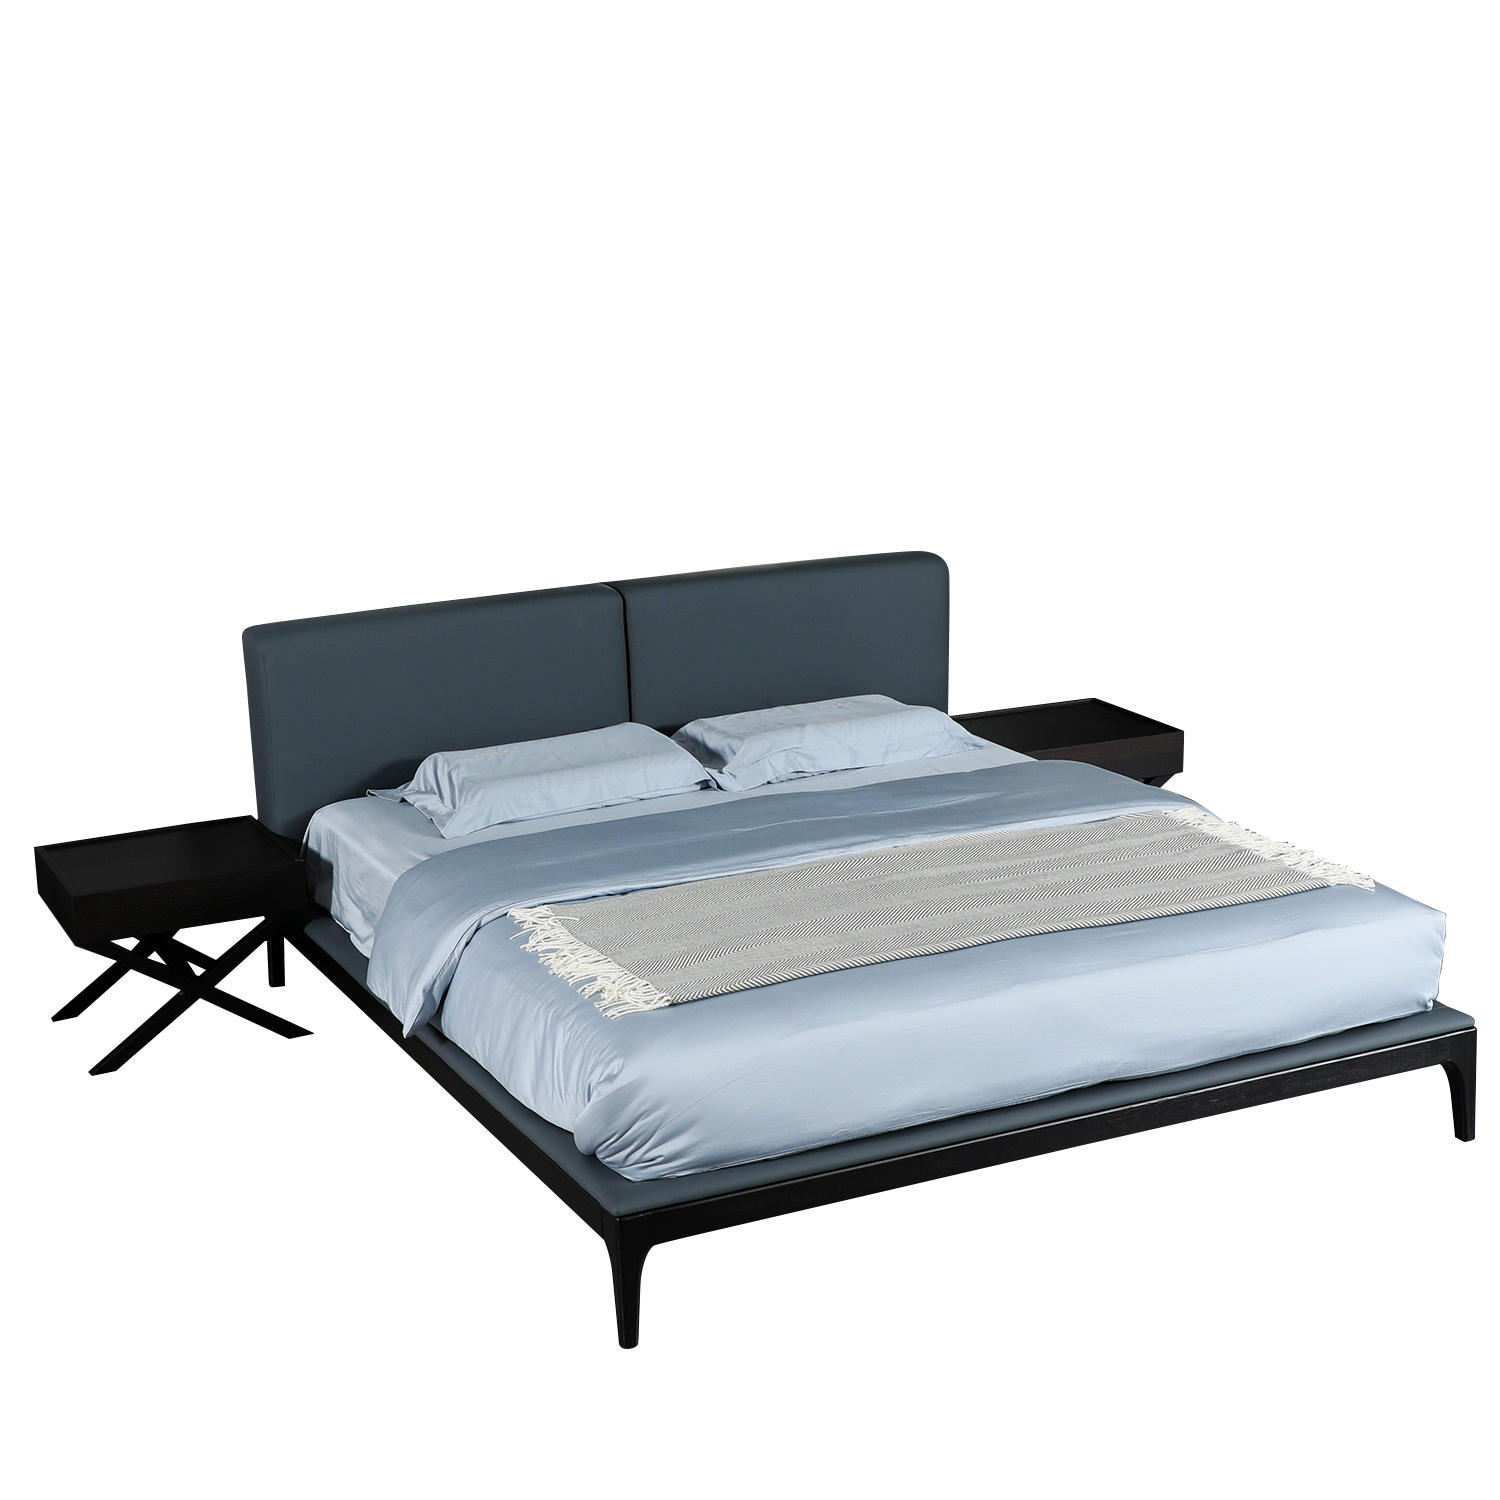 Home Modern Design Furniture Leather Bedroom Bed